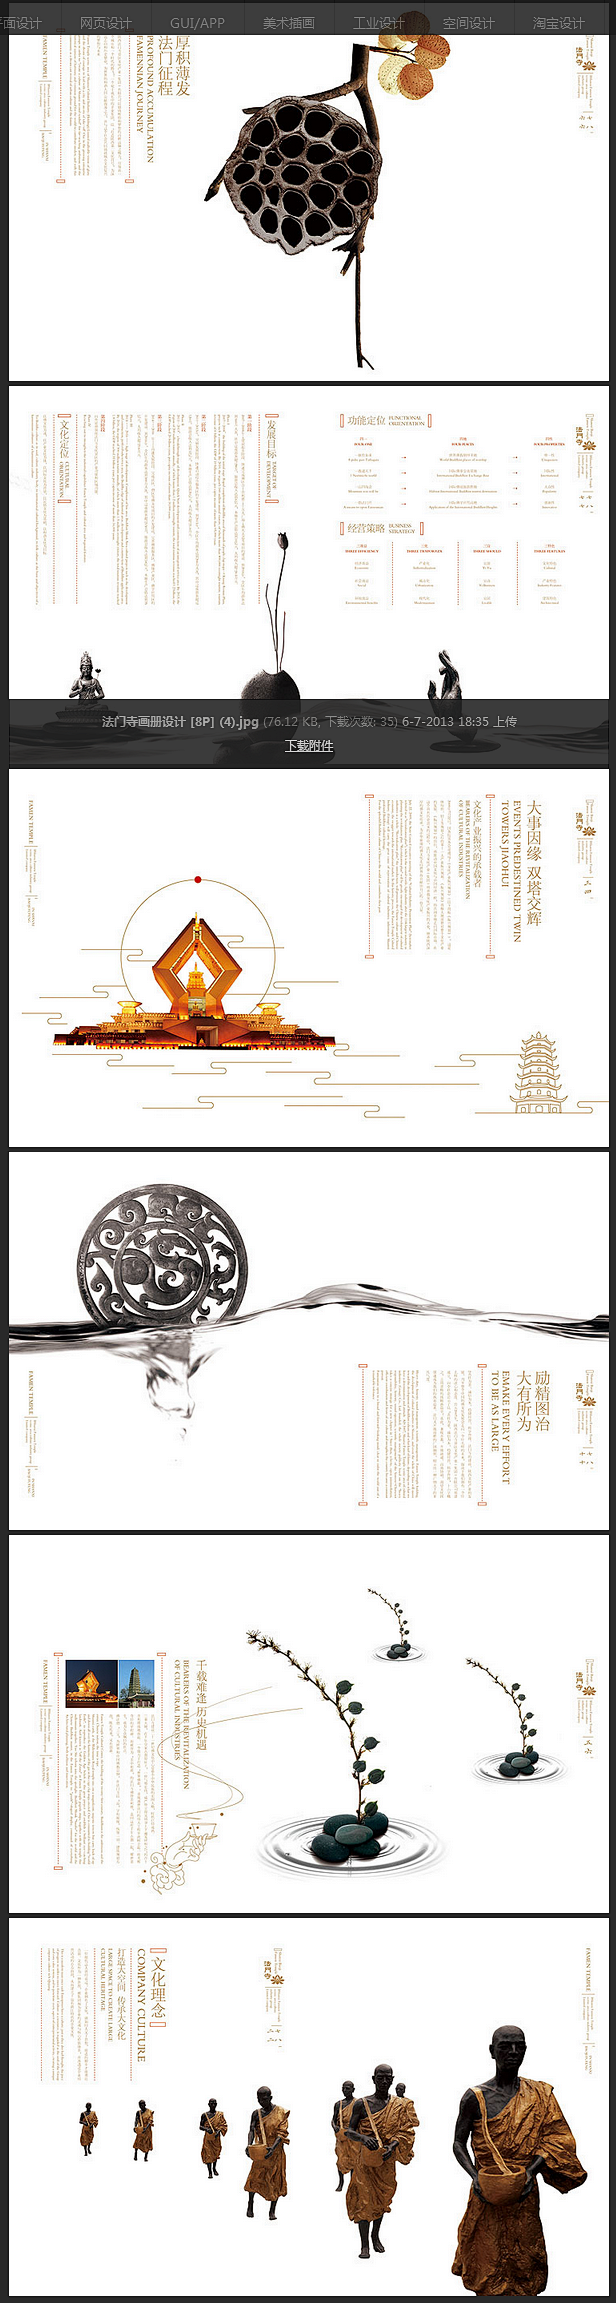 法门寺画册设计 [8P]-国内设计